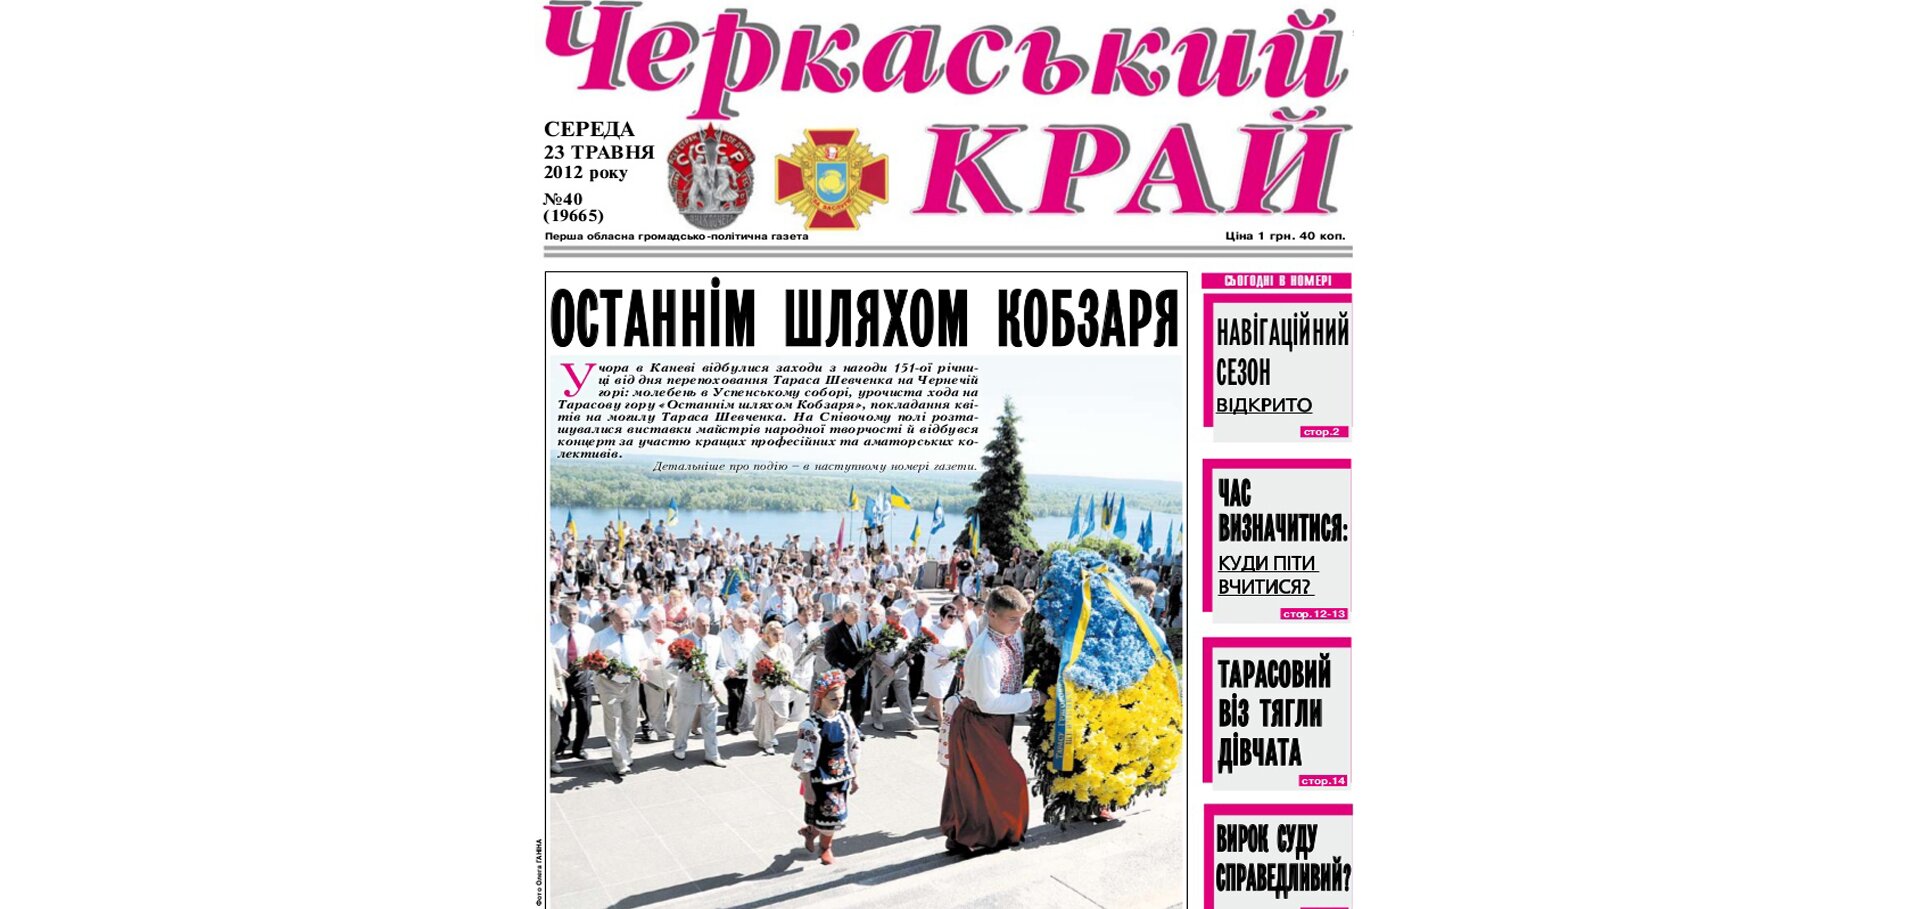 Обласна газета "Черкаський край", що має уманське коріння, відзначила 100-літній ювілей